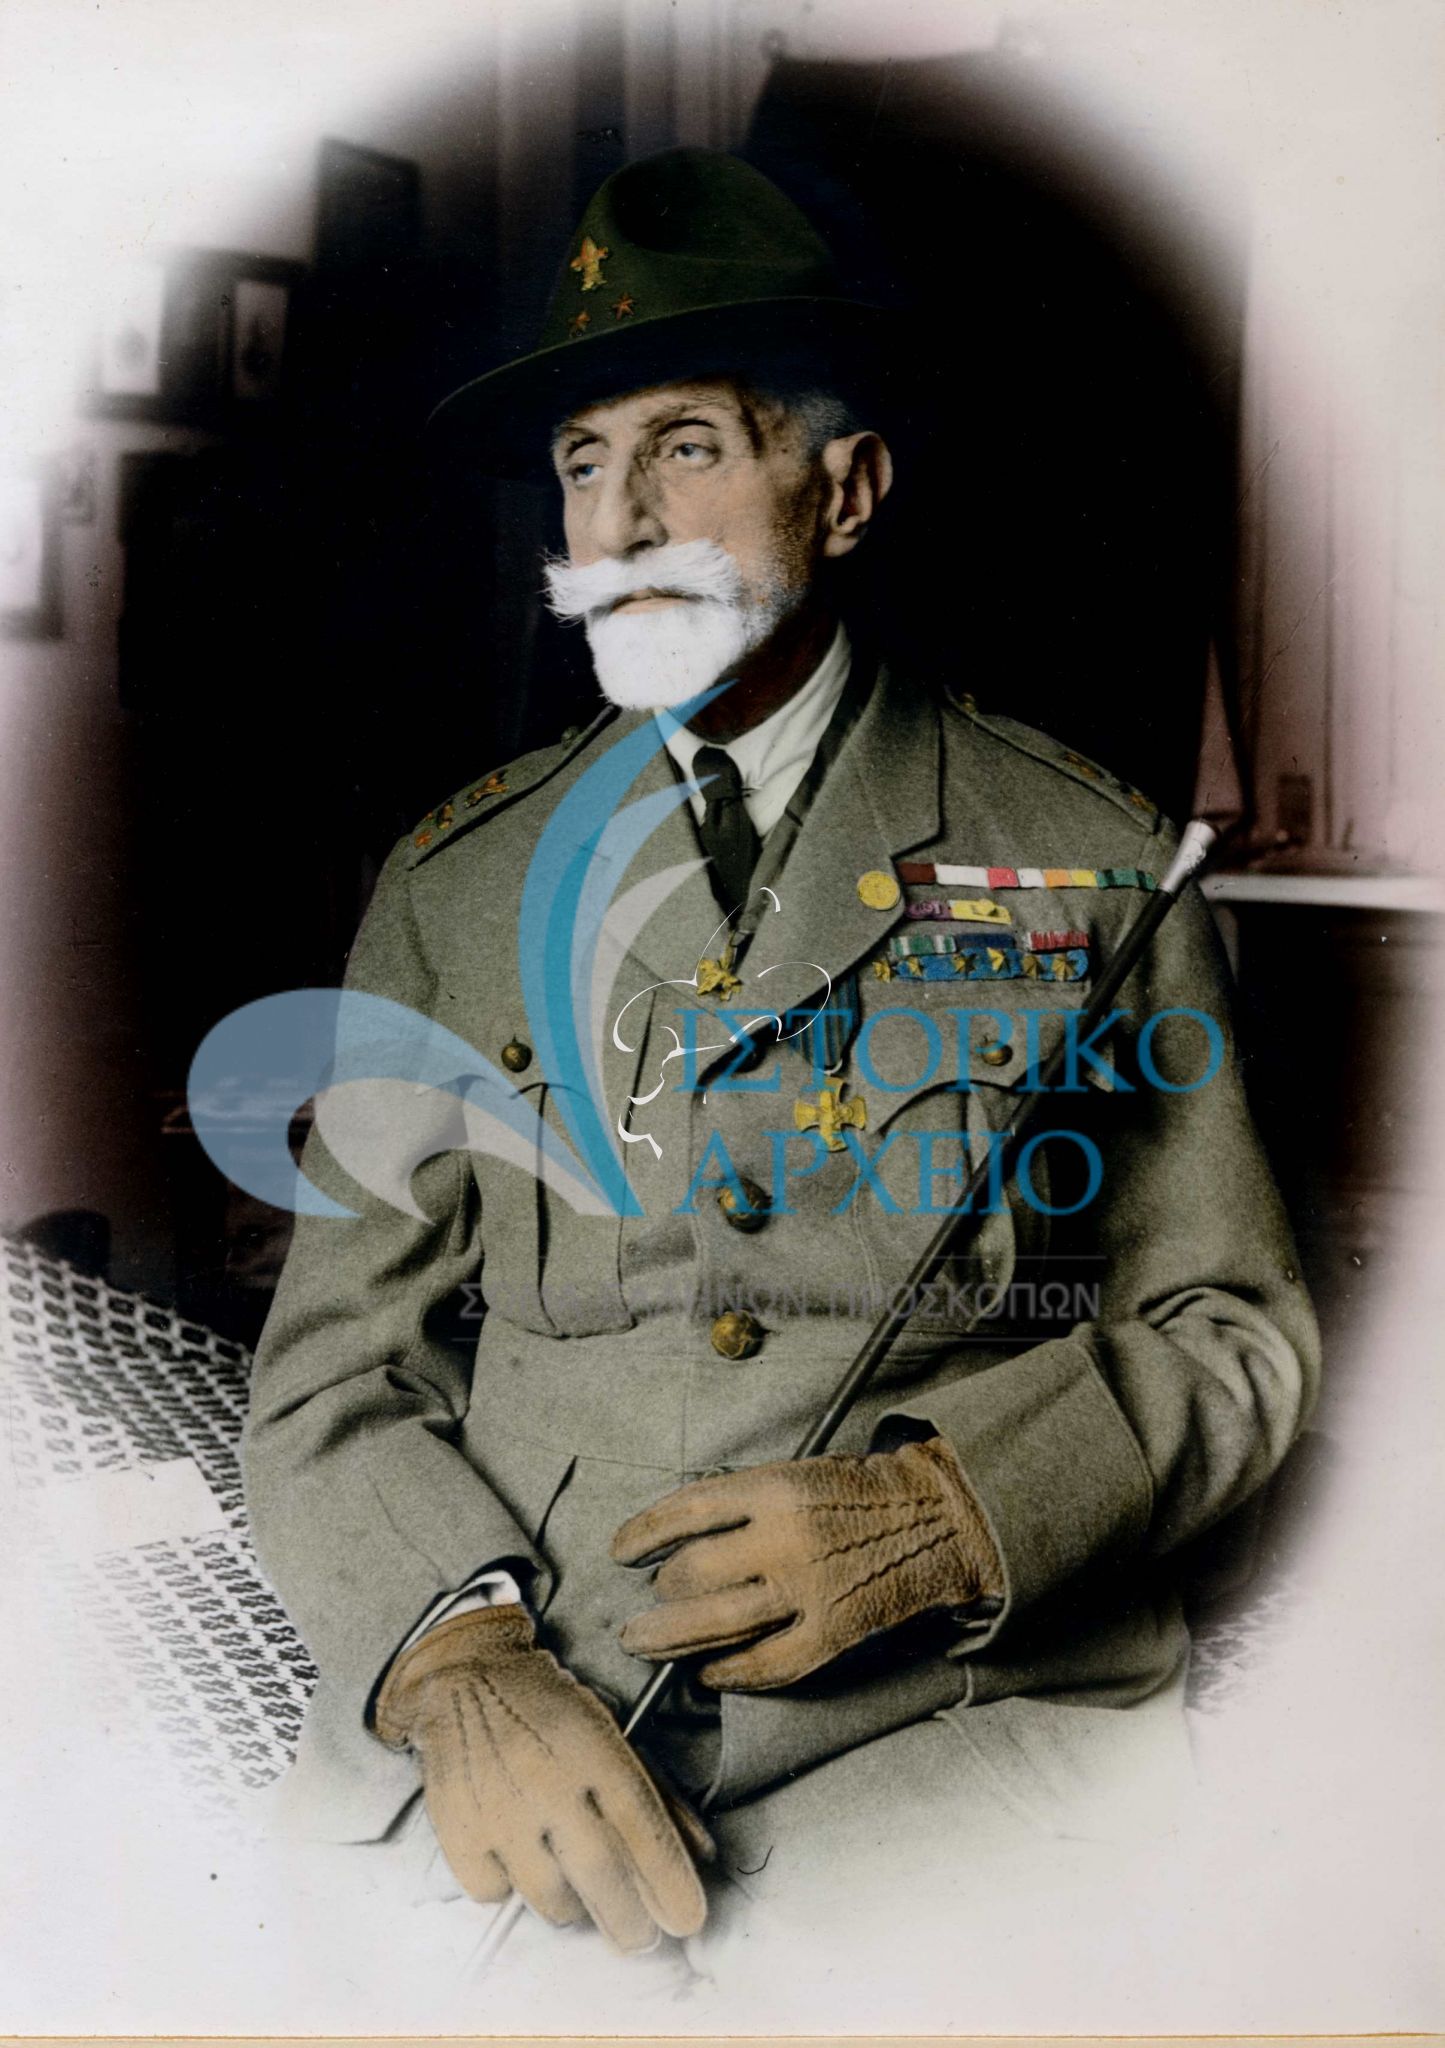 Ο Γενικός Έφορος (1915-1920) Κωνσταντίνος Μελάς σε επιχρωματισμένη φωτογραφία του Σ. Λορέντζου κατά τον Μεσοπόλεμο.